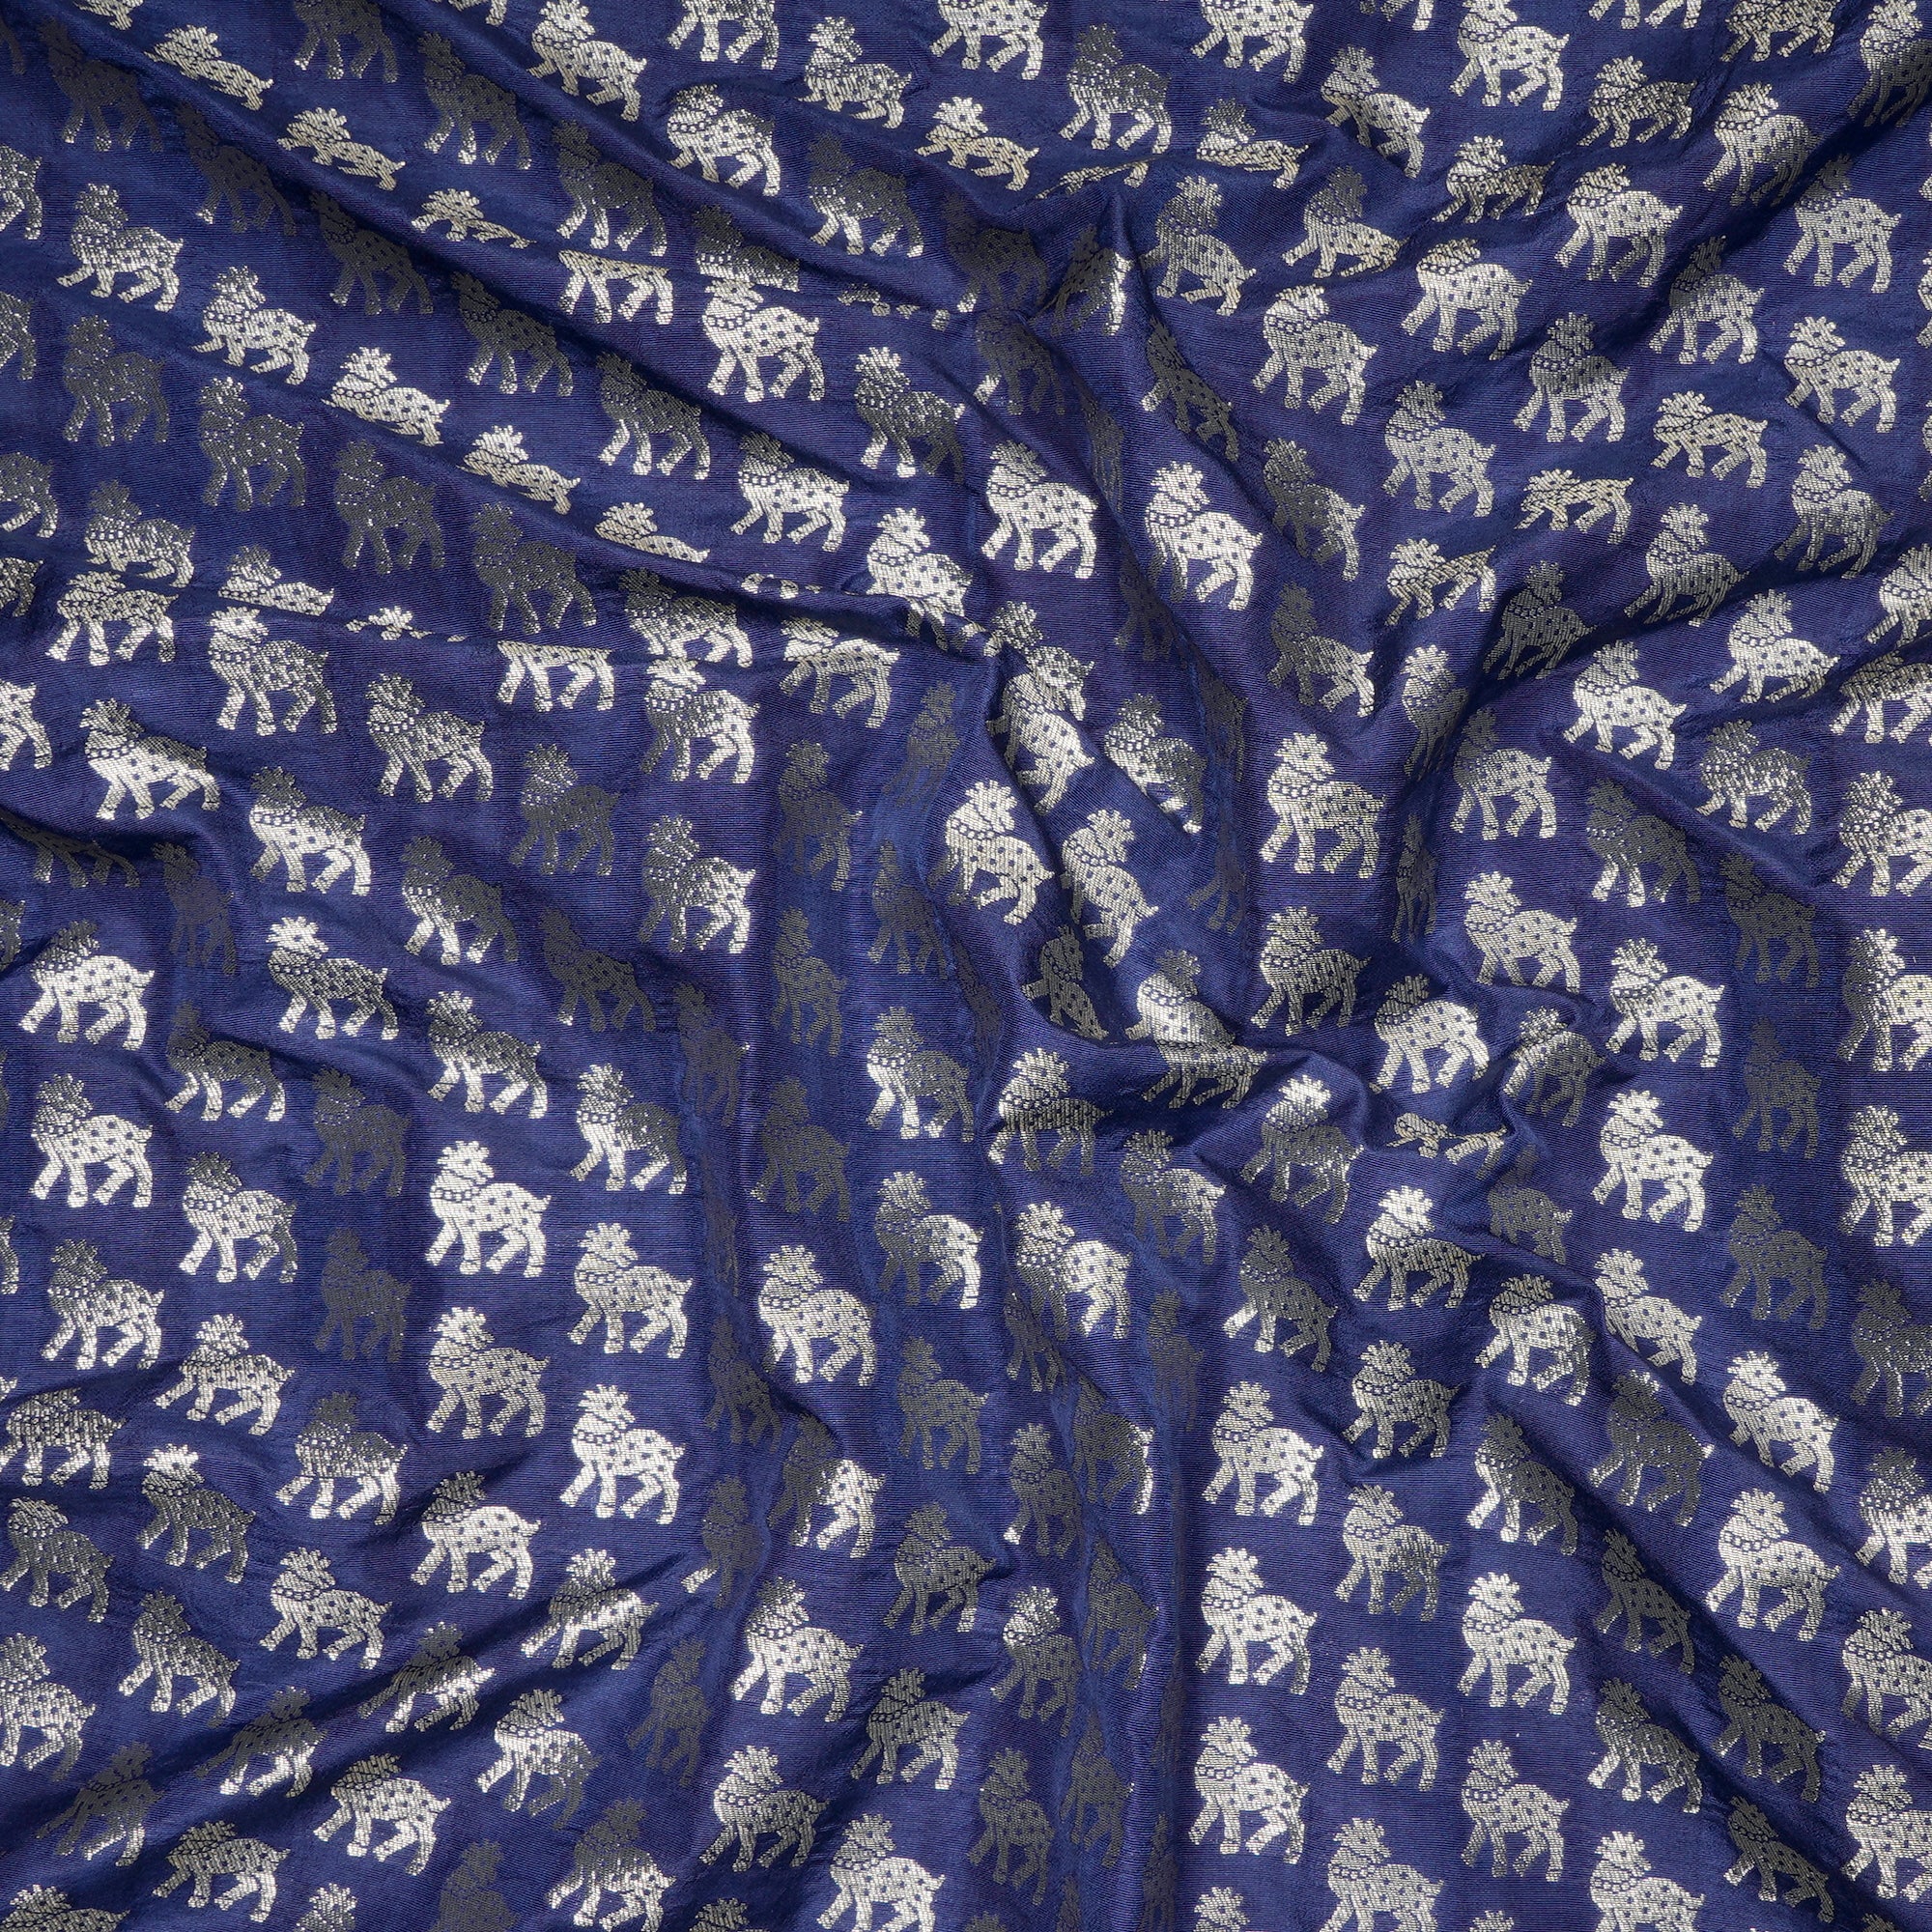 Violet Ice Animal Pattern Blended Banarasi Brocade Fabric